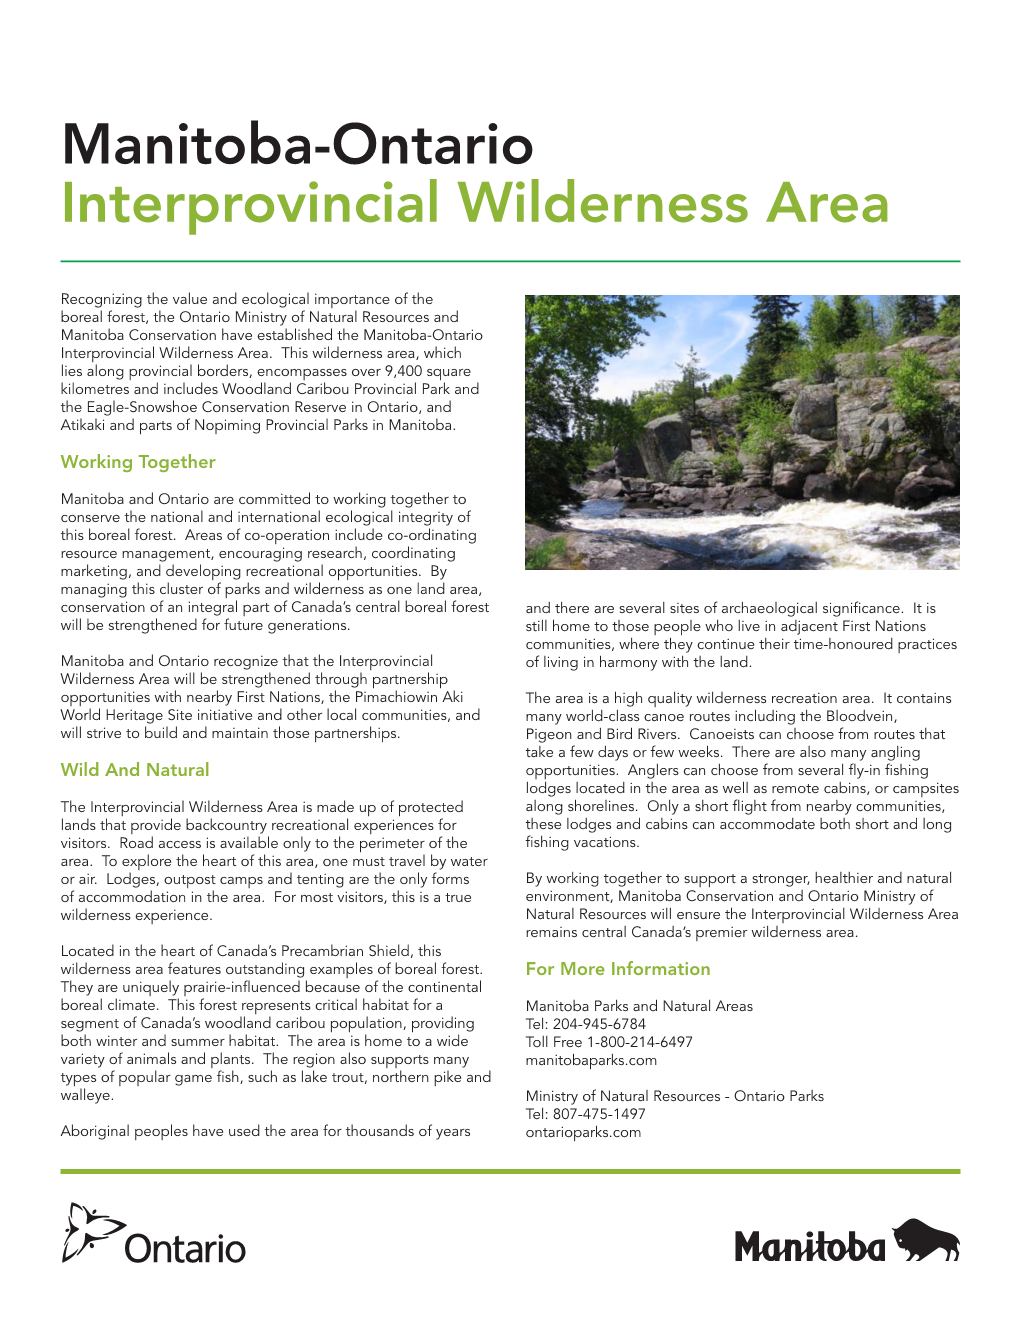 Manitoba-Ontario Interprovincial Wilderness Area